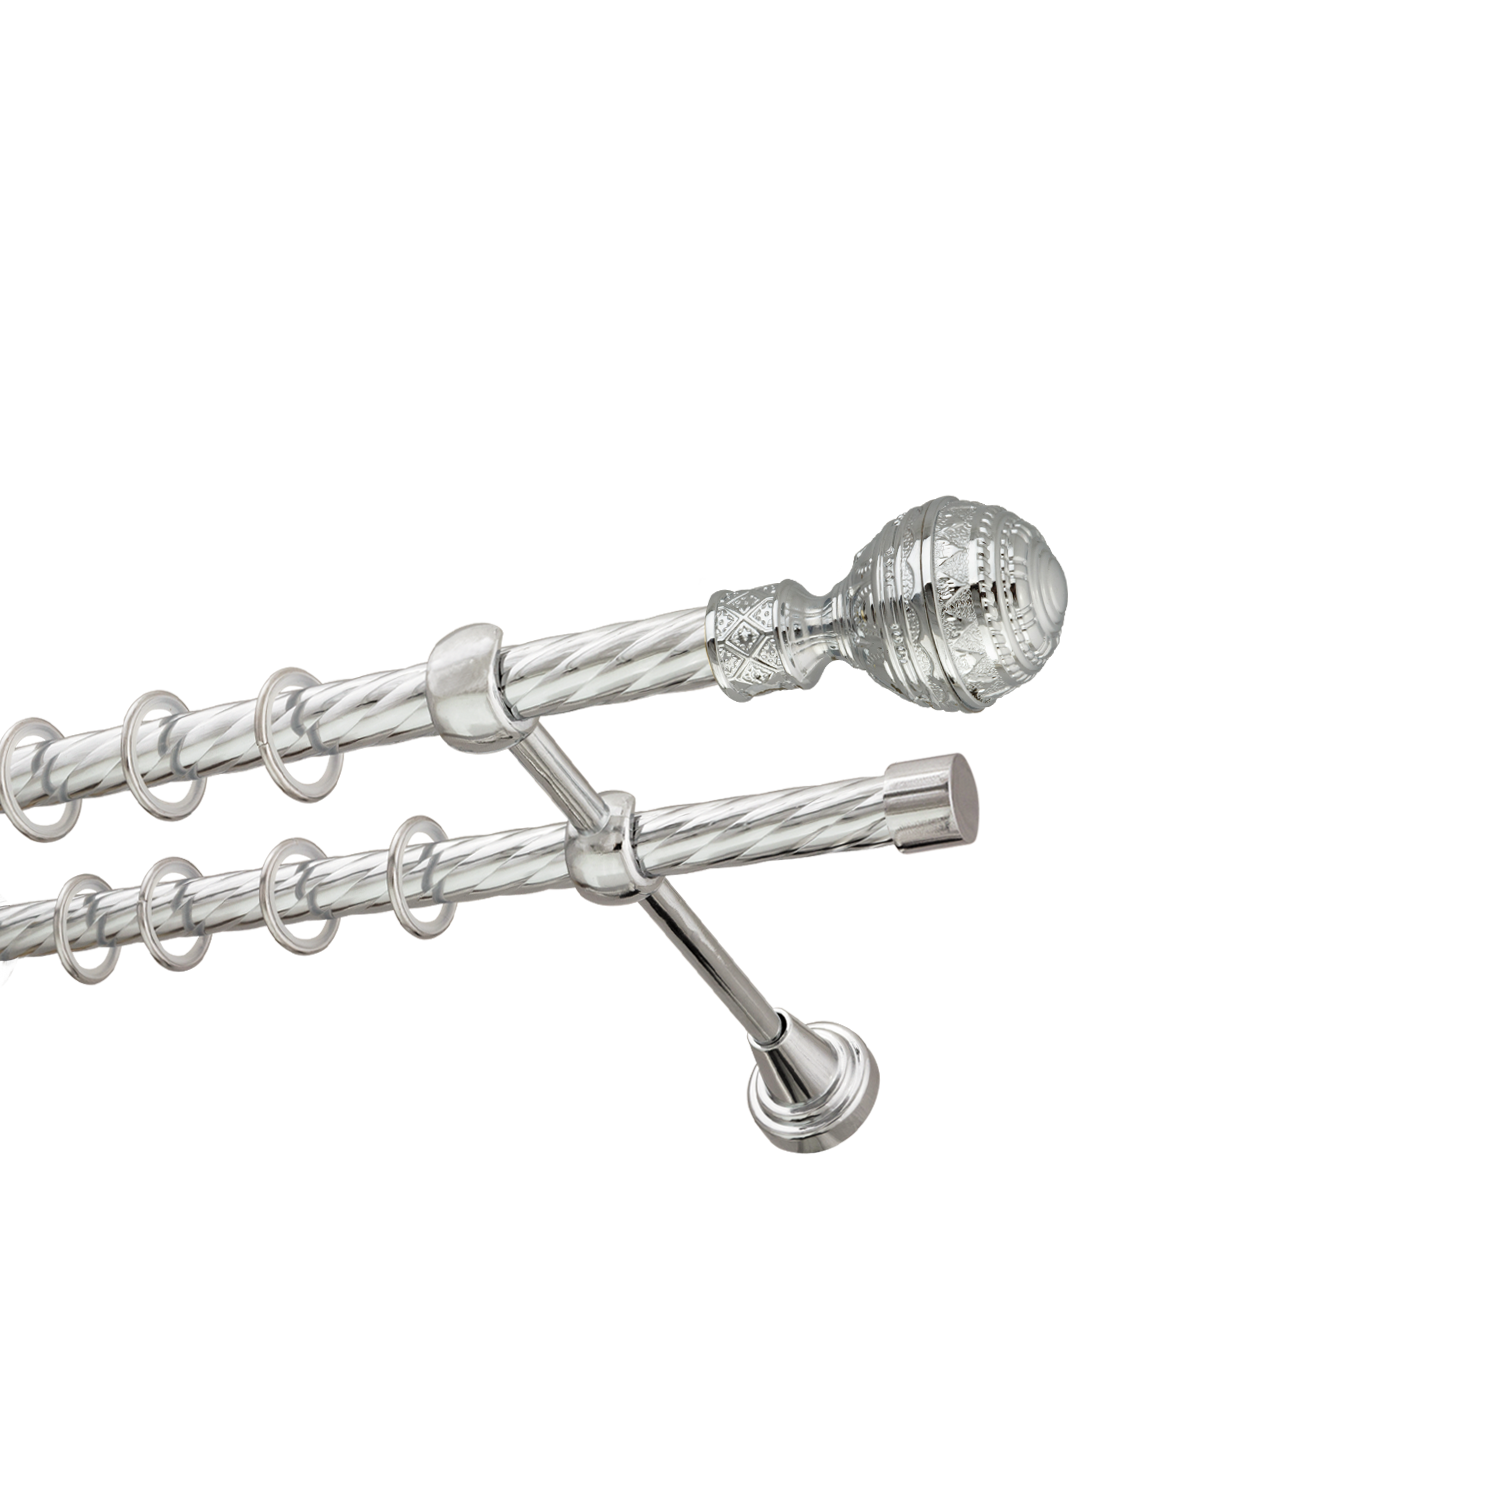 Металлический карниз для штор Роял, двухрядный 16/16 мм, серебро, витая штанга, длина 180 см